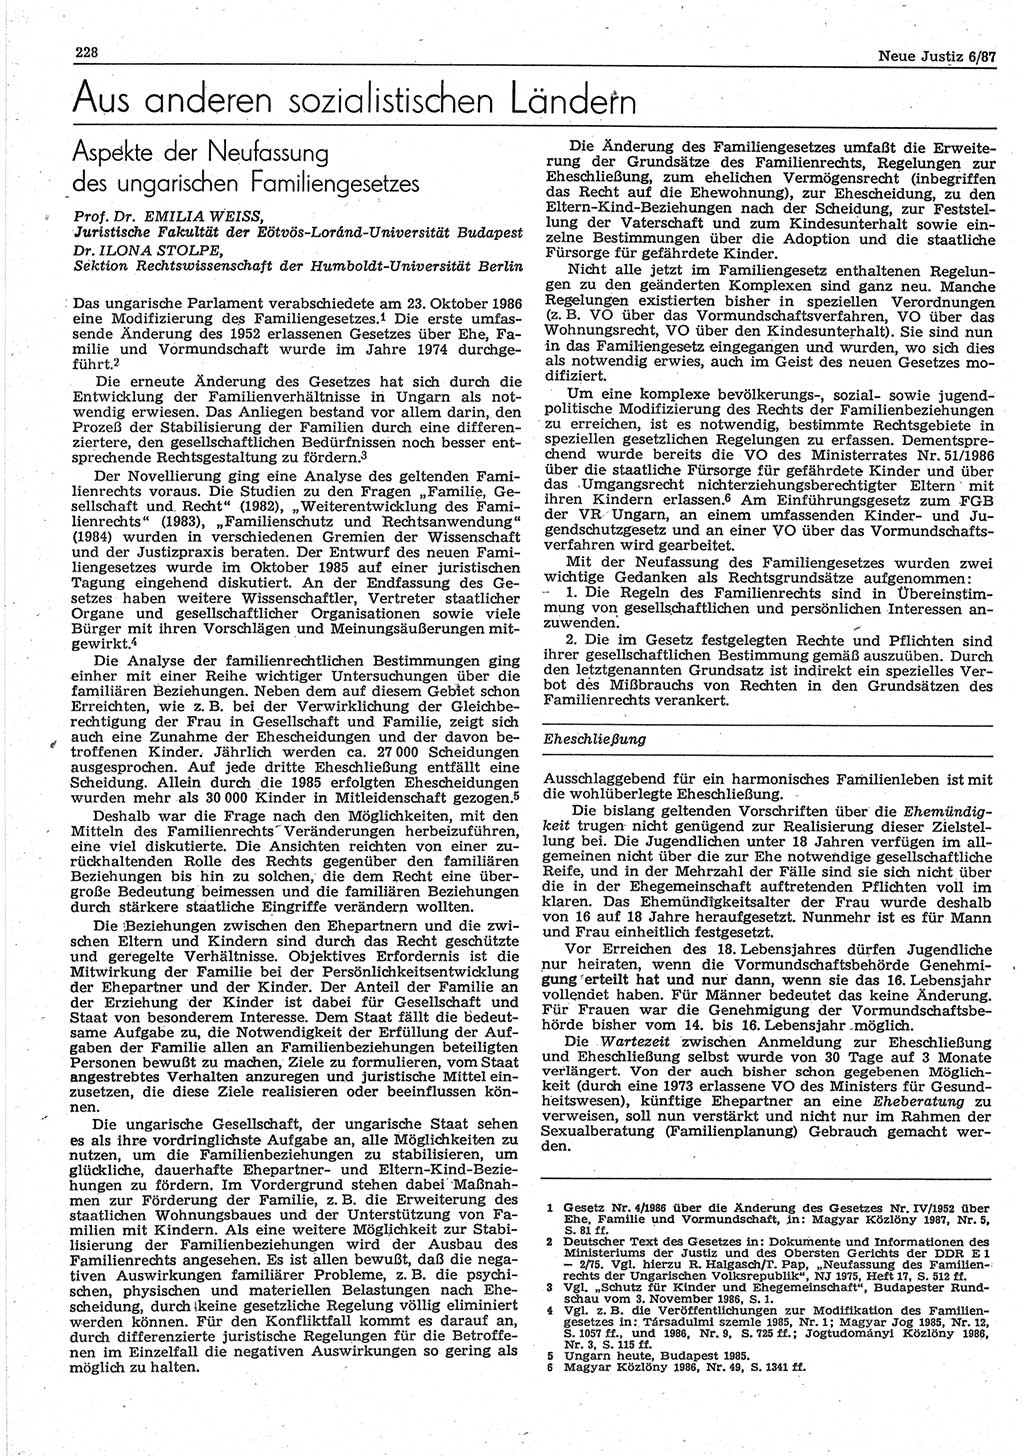 Neue Justiz (NJ), Zeitschrift für sozialistisches Recht und Gesetzlichkeit [Deutsche Demokratische Republik (DDR)], 41. Jahrgang 1987, Seite 228 (NJ DDR 1987, S. 228)